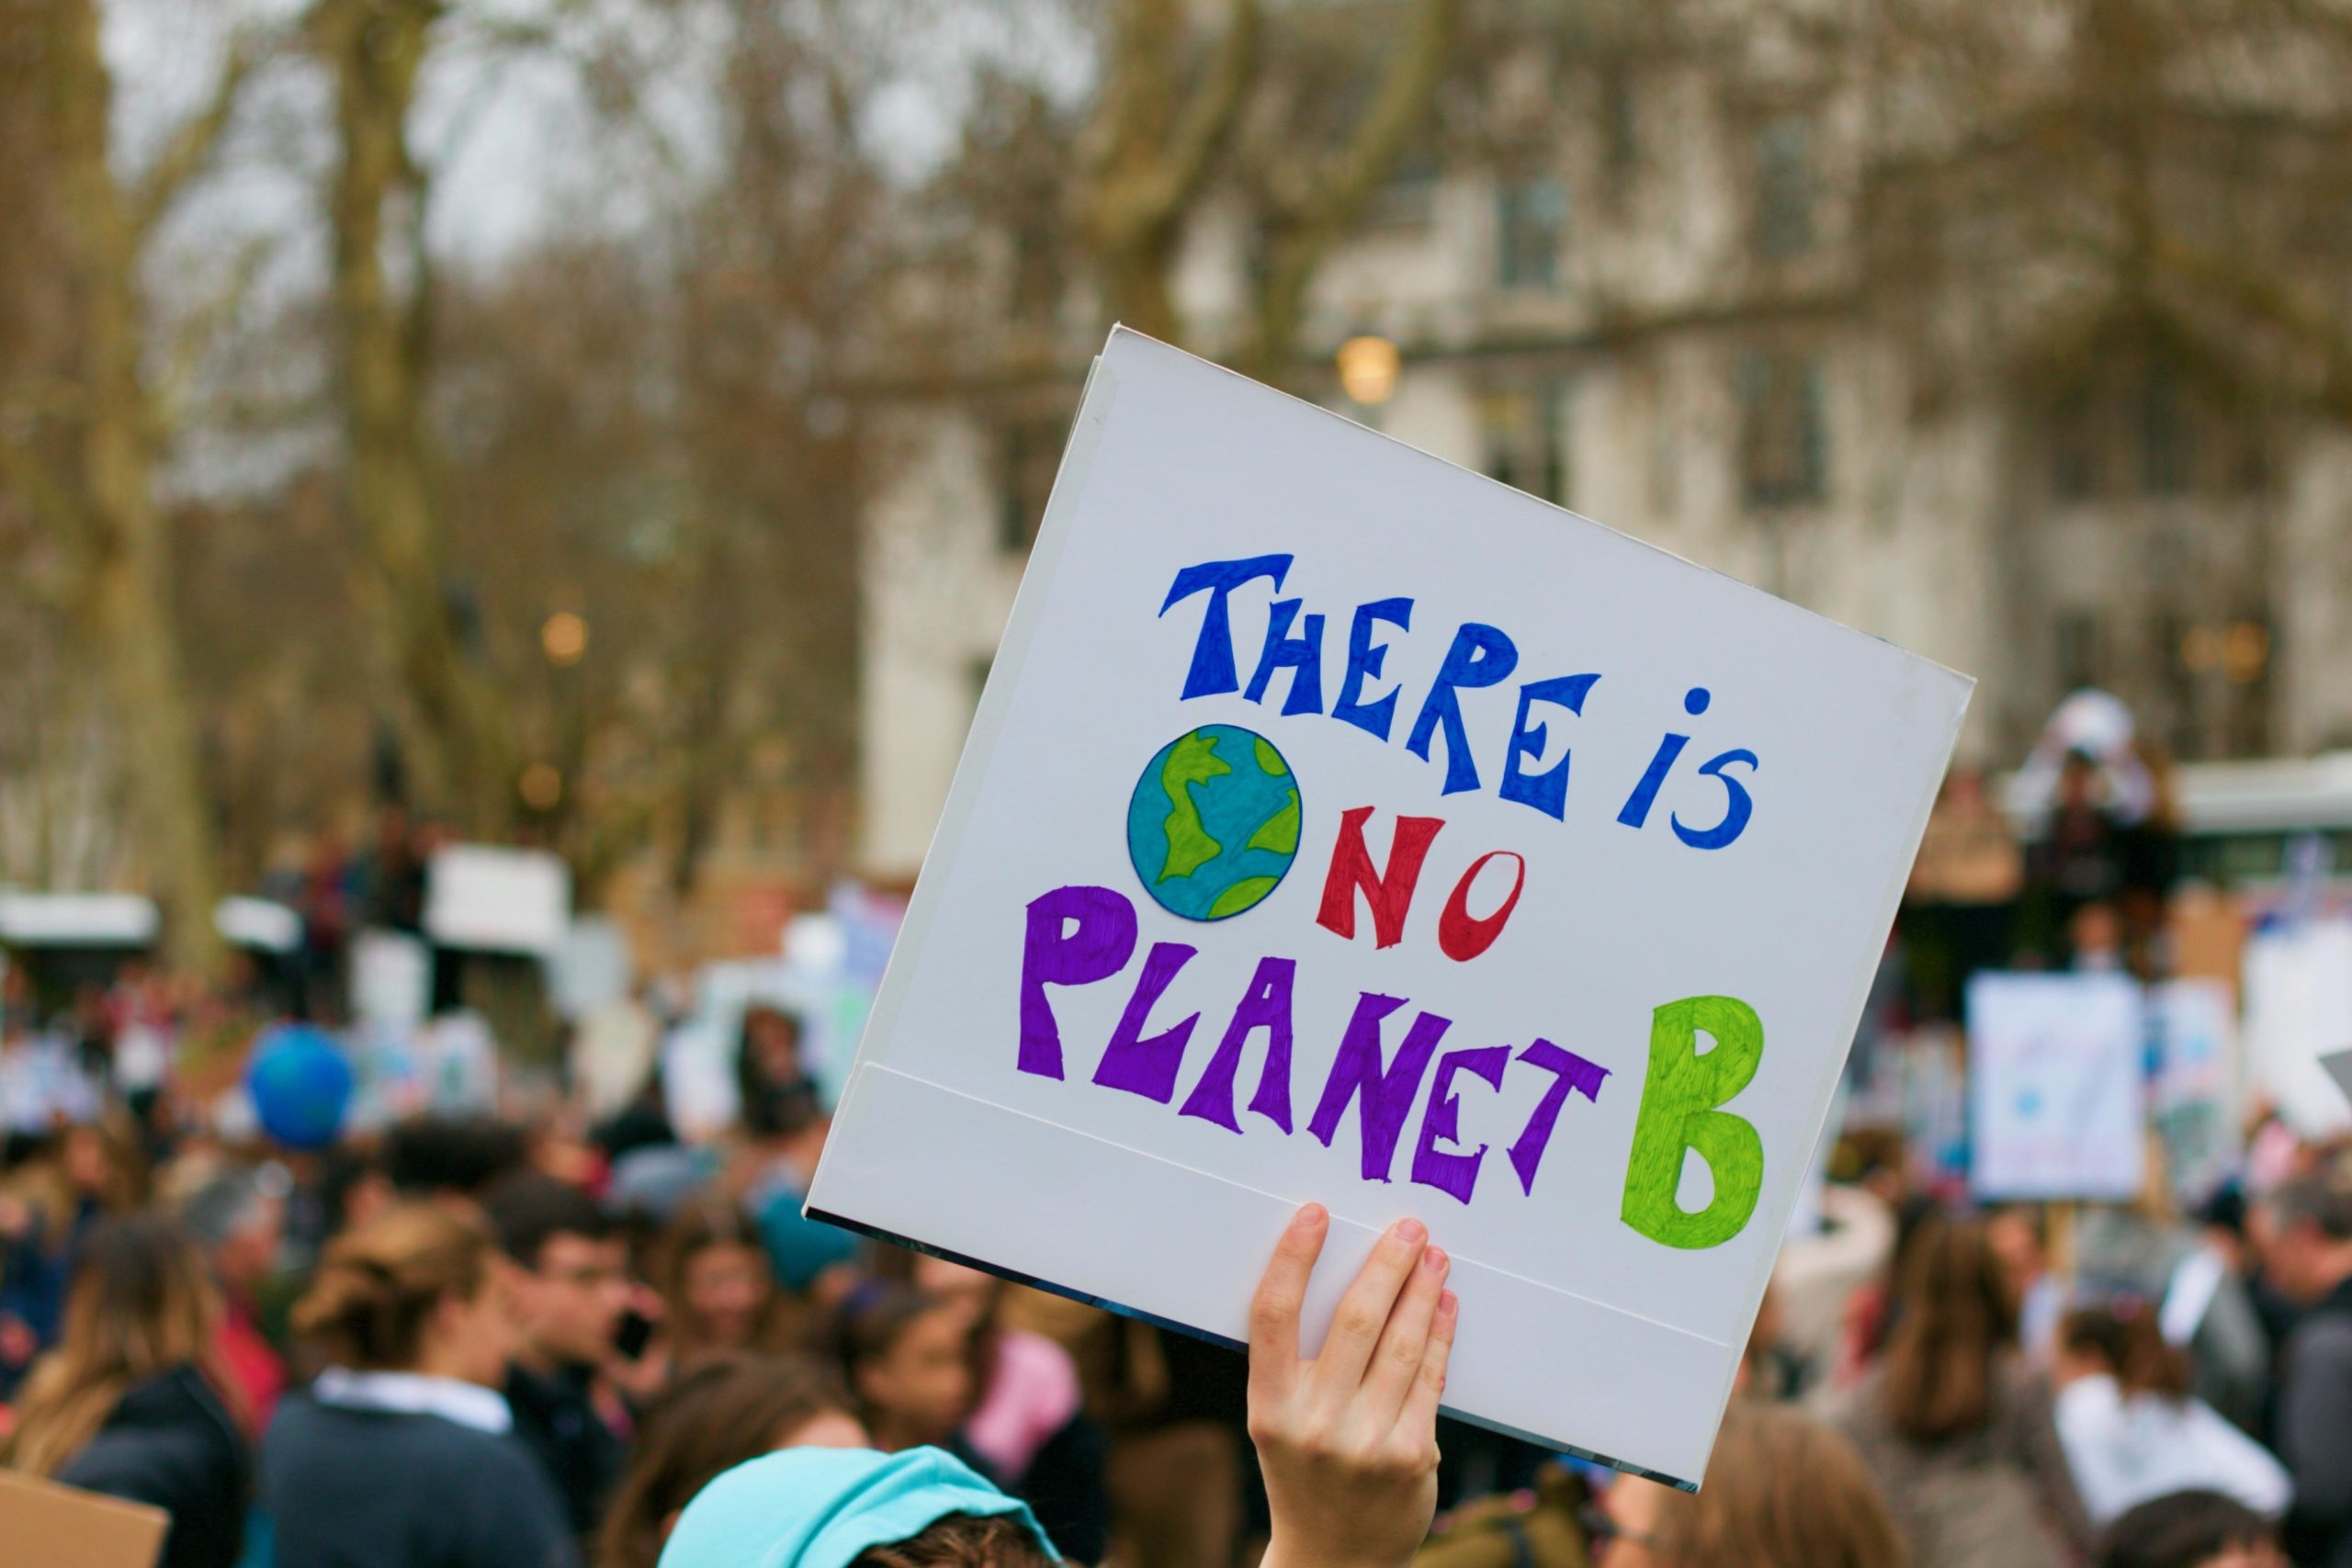 Auf einer Demonstration hält jemand ein Schild mit dem Slogan der Klimaschutzbewegung "There is no Planet B" in die Höhe